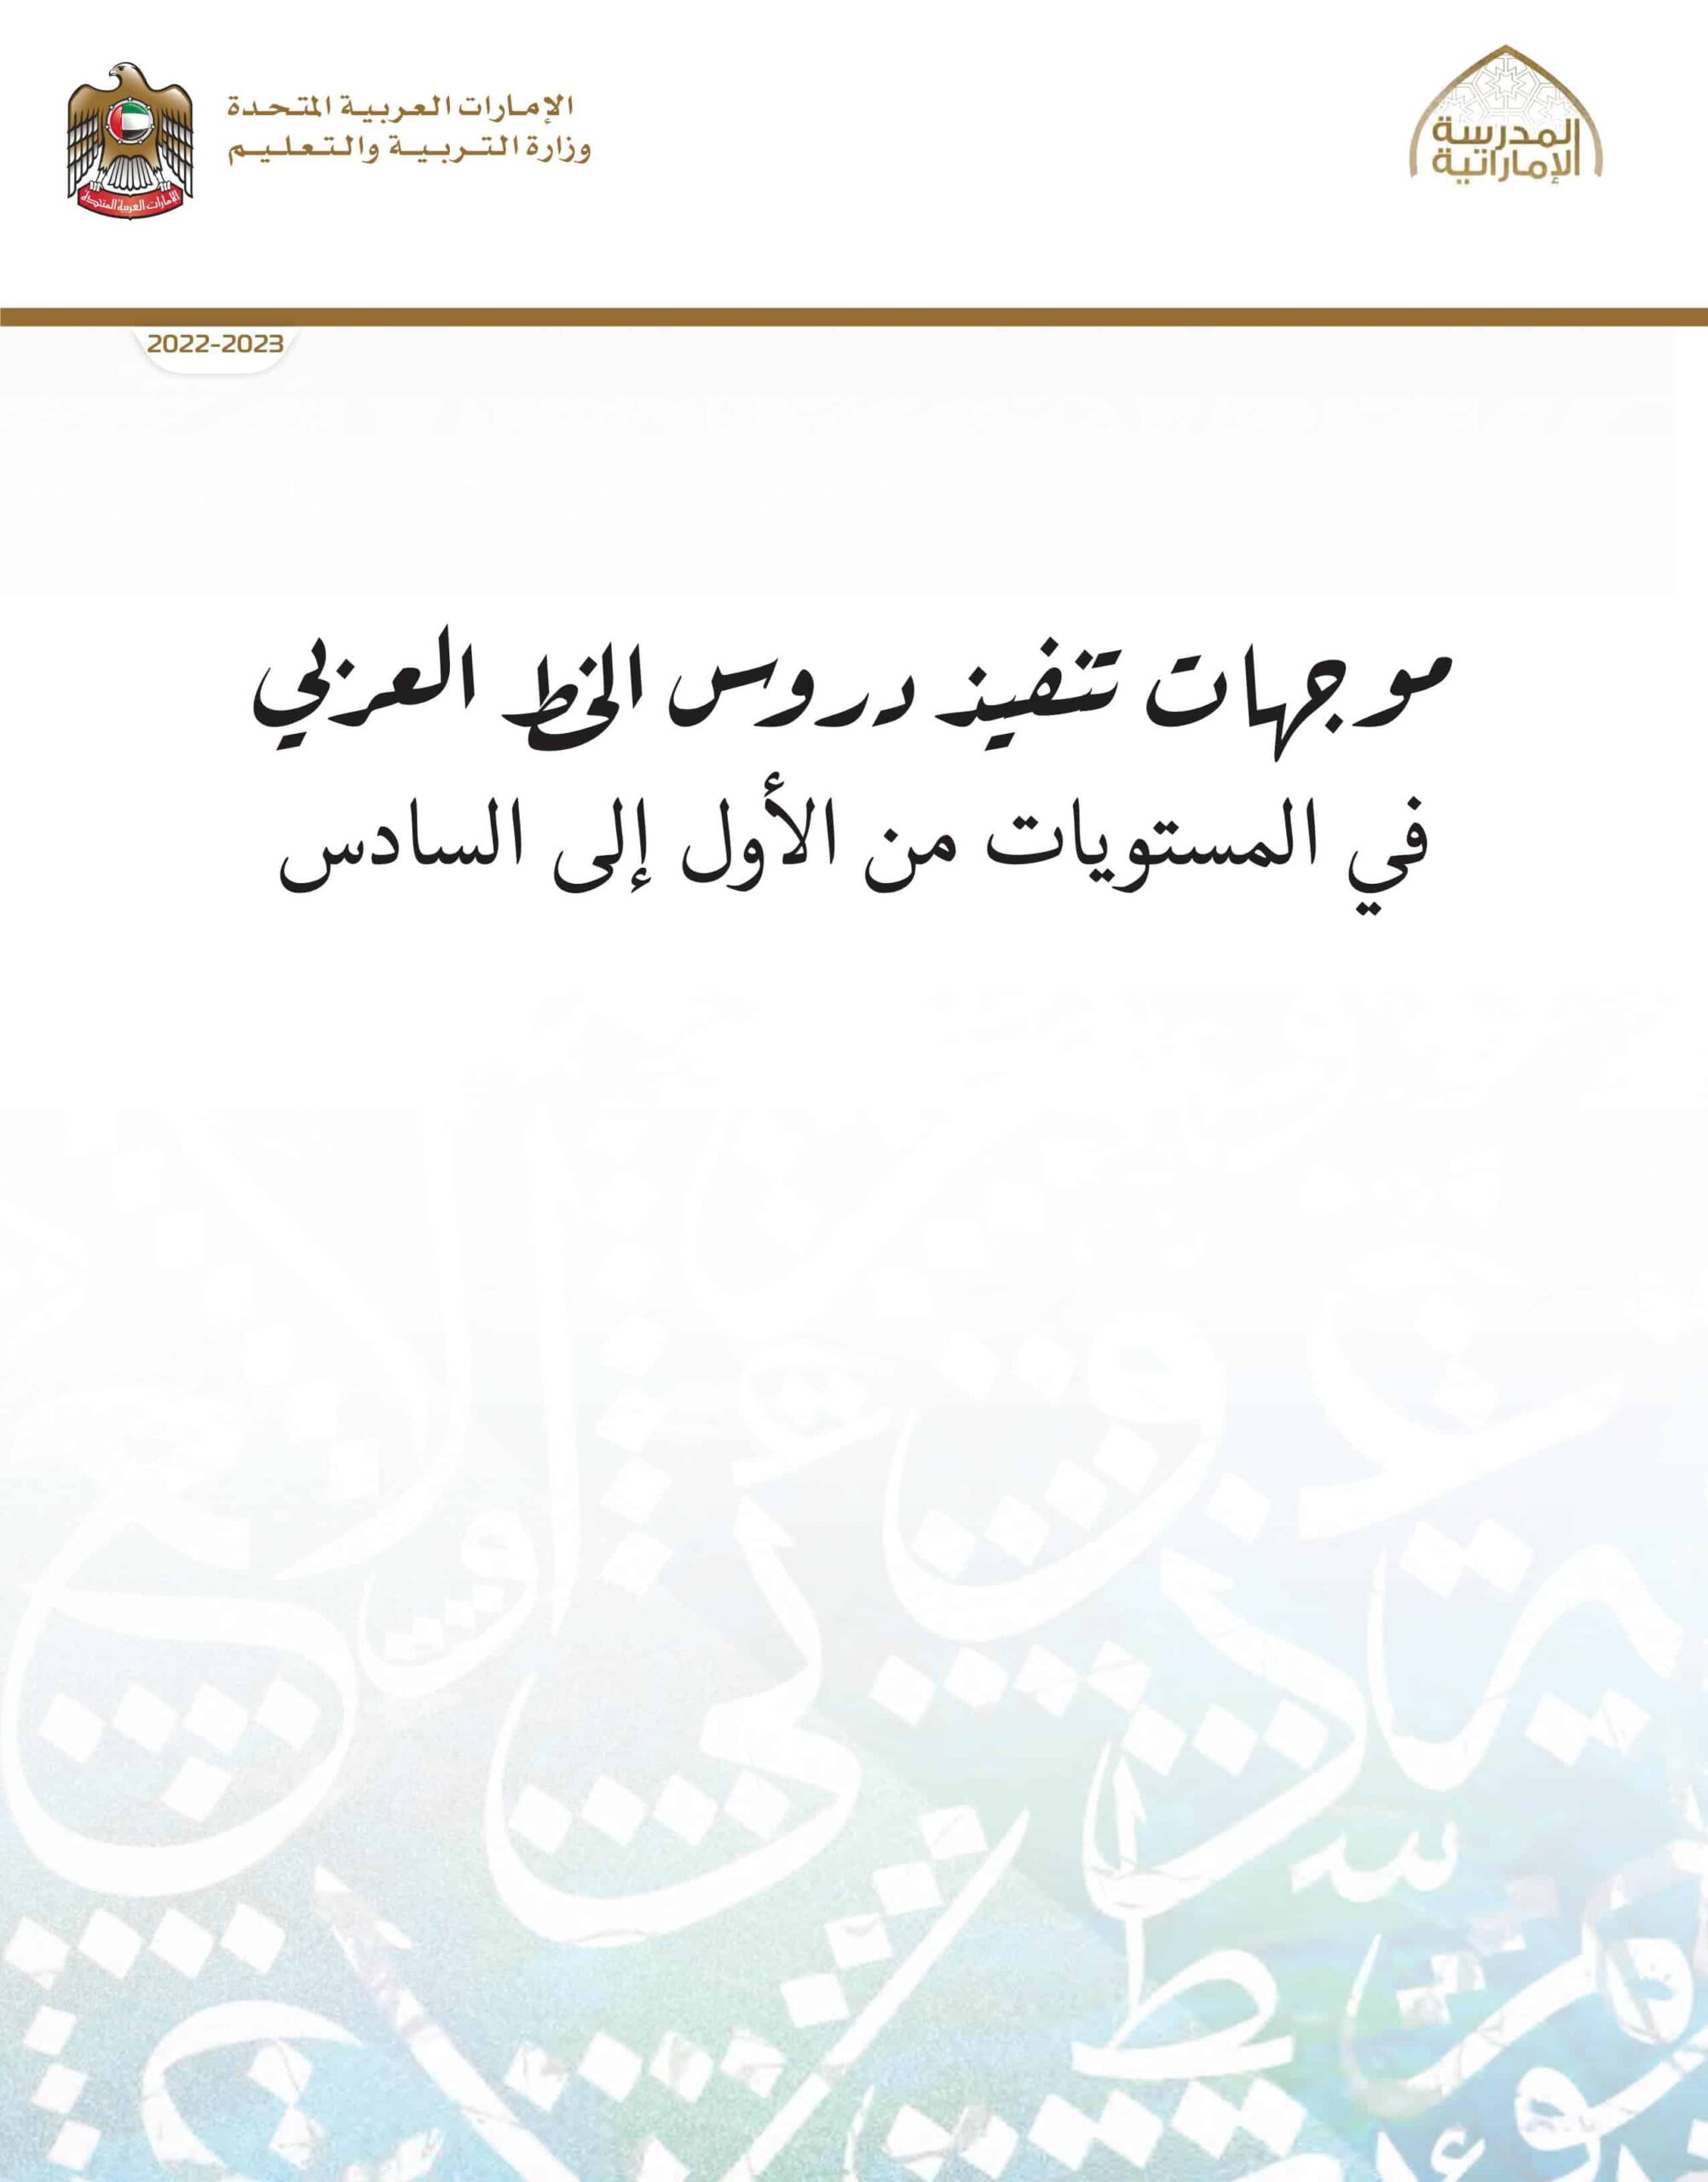 موجهات تنفيذ دروس الخط العربي اللغة العربية الصف الأول إلى الصف السادس الفصل الدراسي الأول 2022-2023